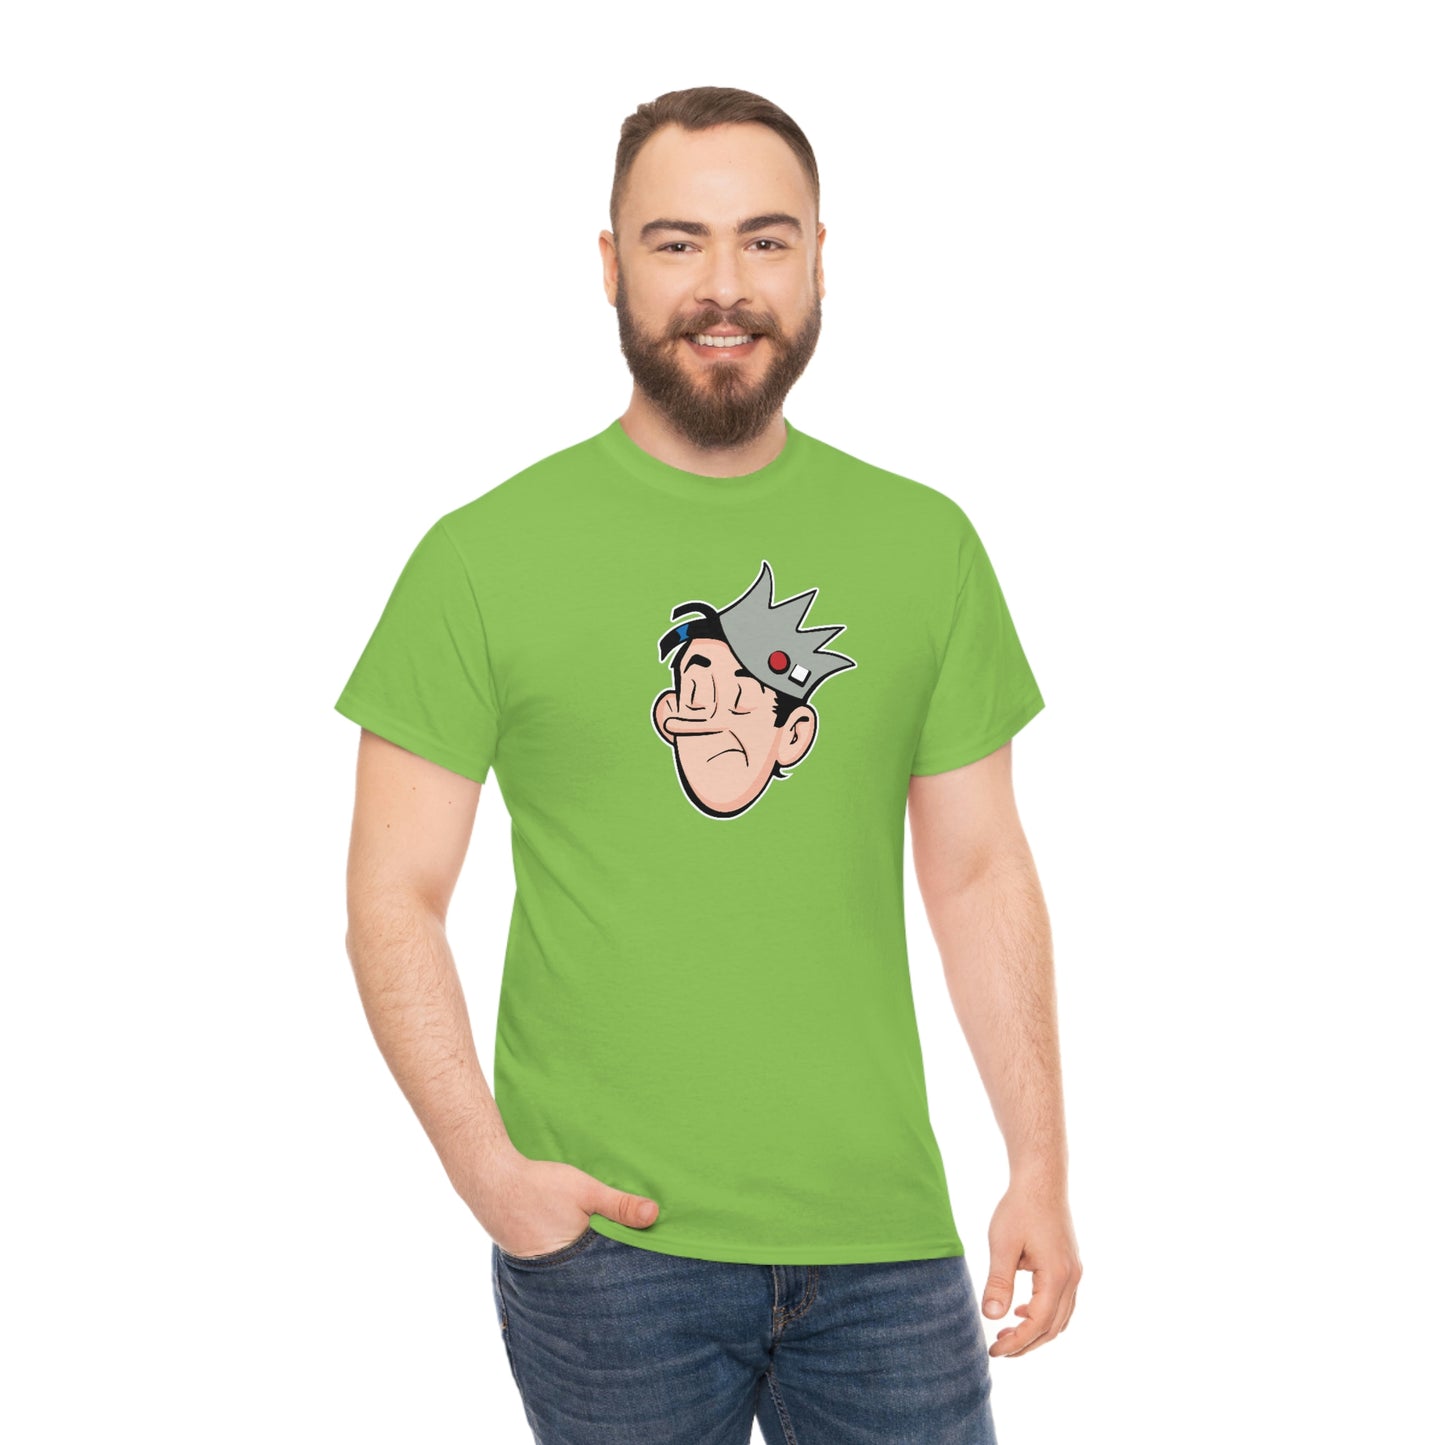 Jughead T-Shirt